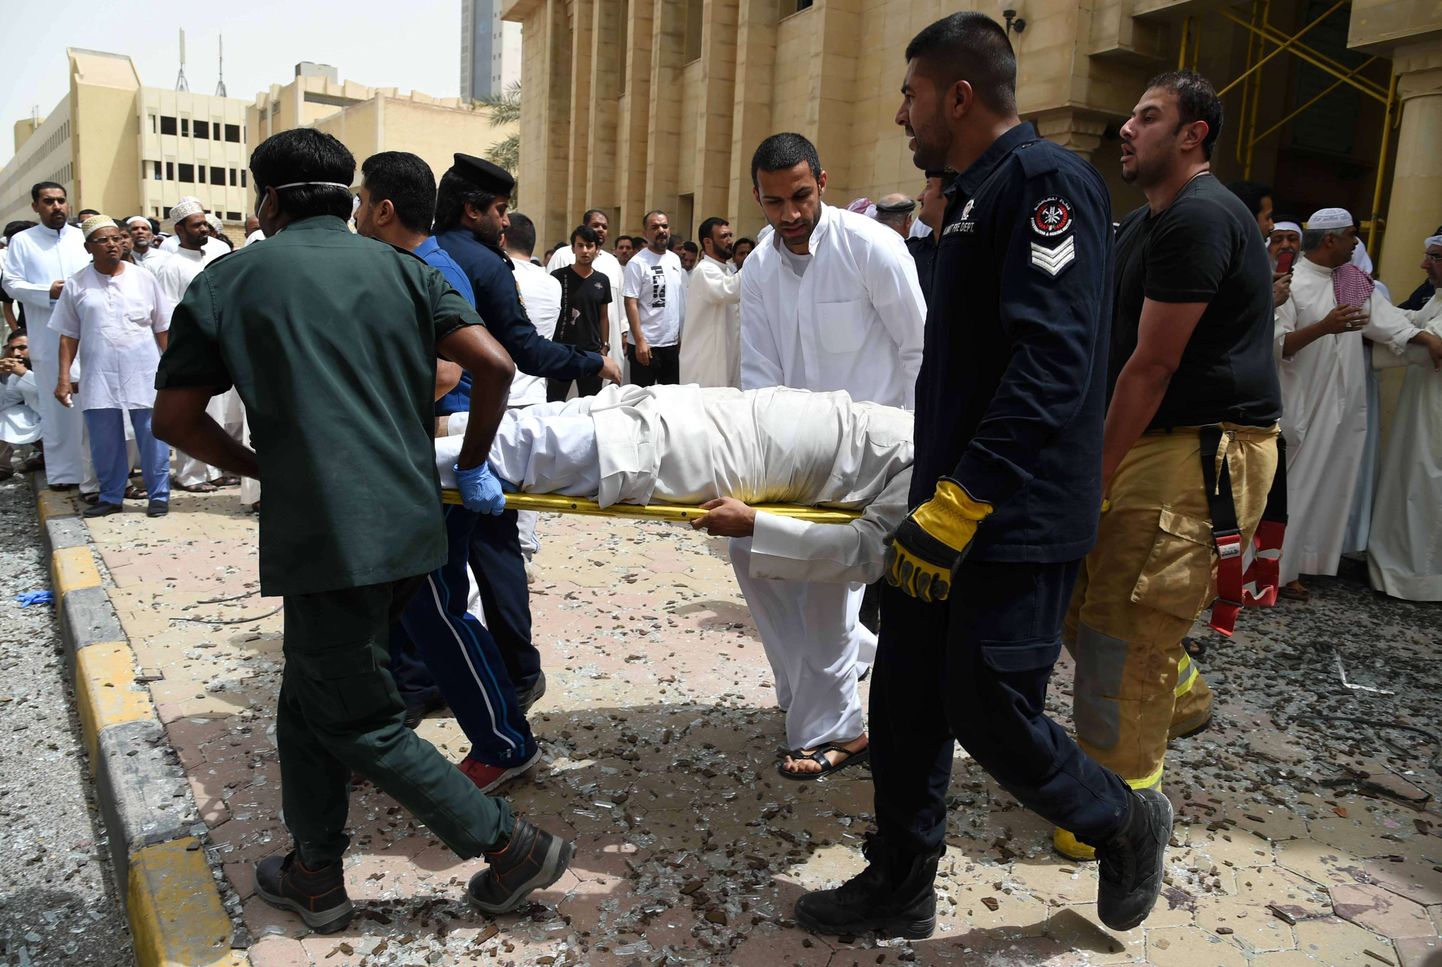 Kuveidi julgeoleku- ja meditsiinitöötajad kannavad välja ohvreid pärast eelmise aasta juunis šiiamošeele korraldatud terrorirünnakut.